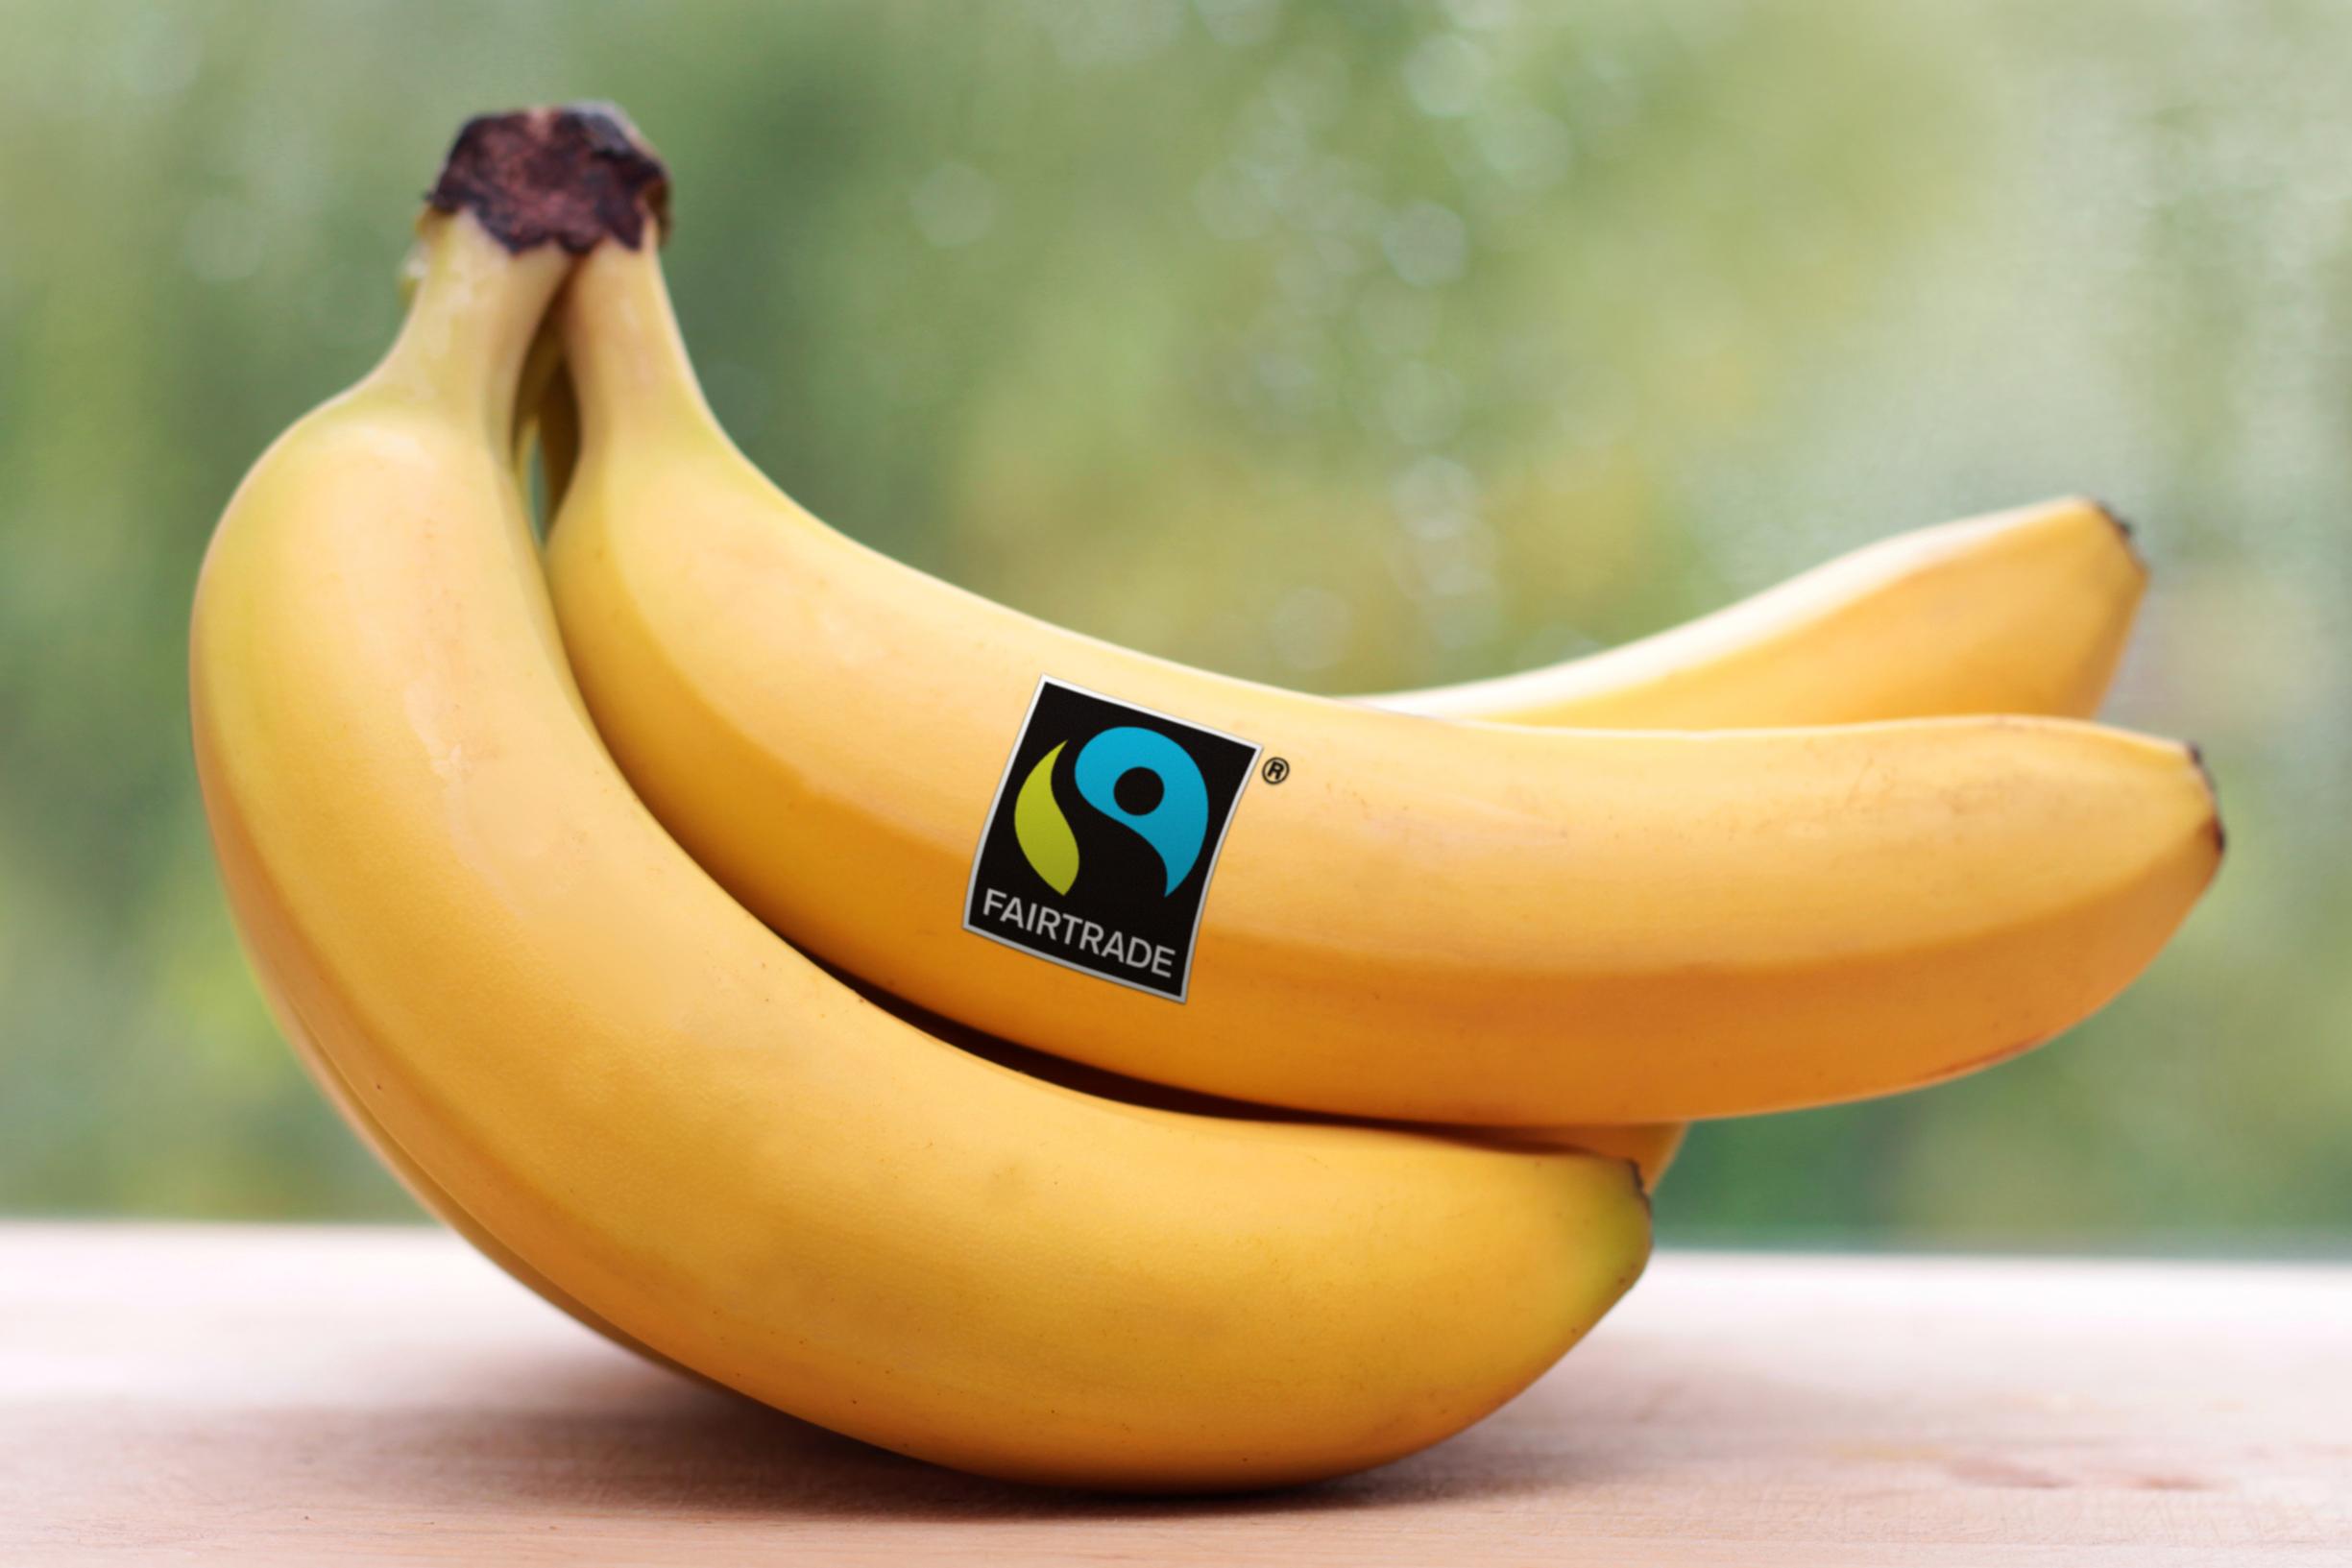 Een tros eerlijke bananen? Bepaal zelf de prijs | De Standaard